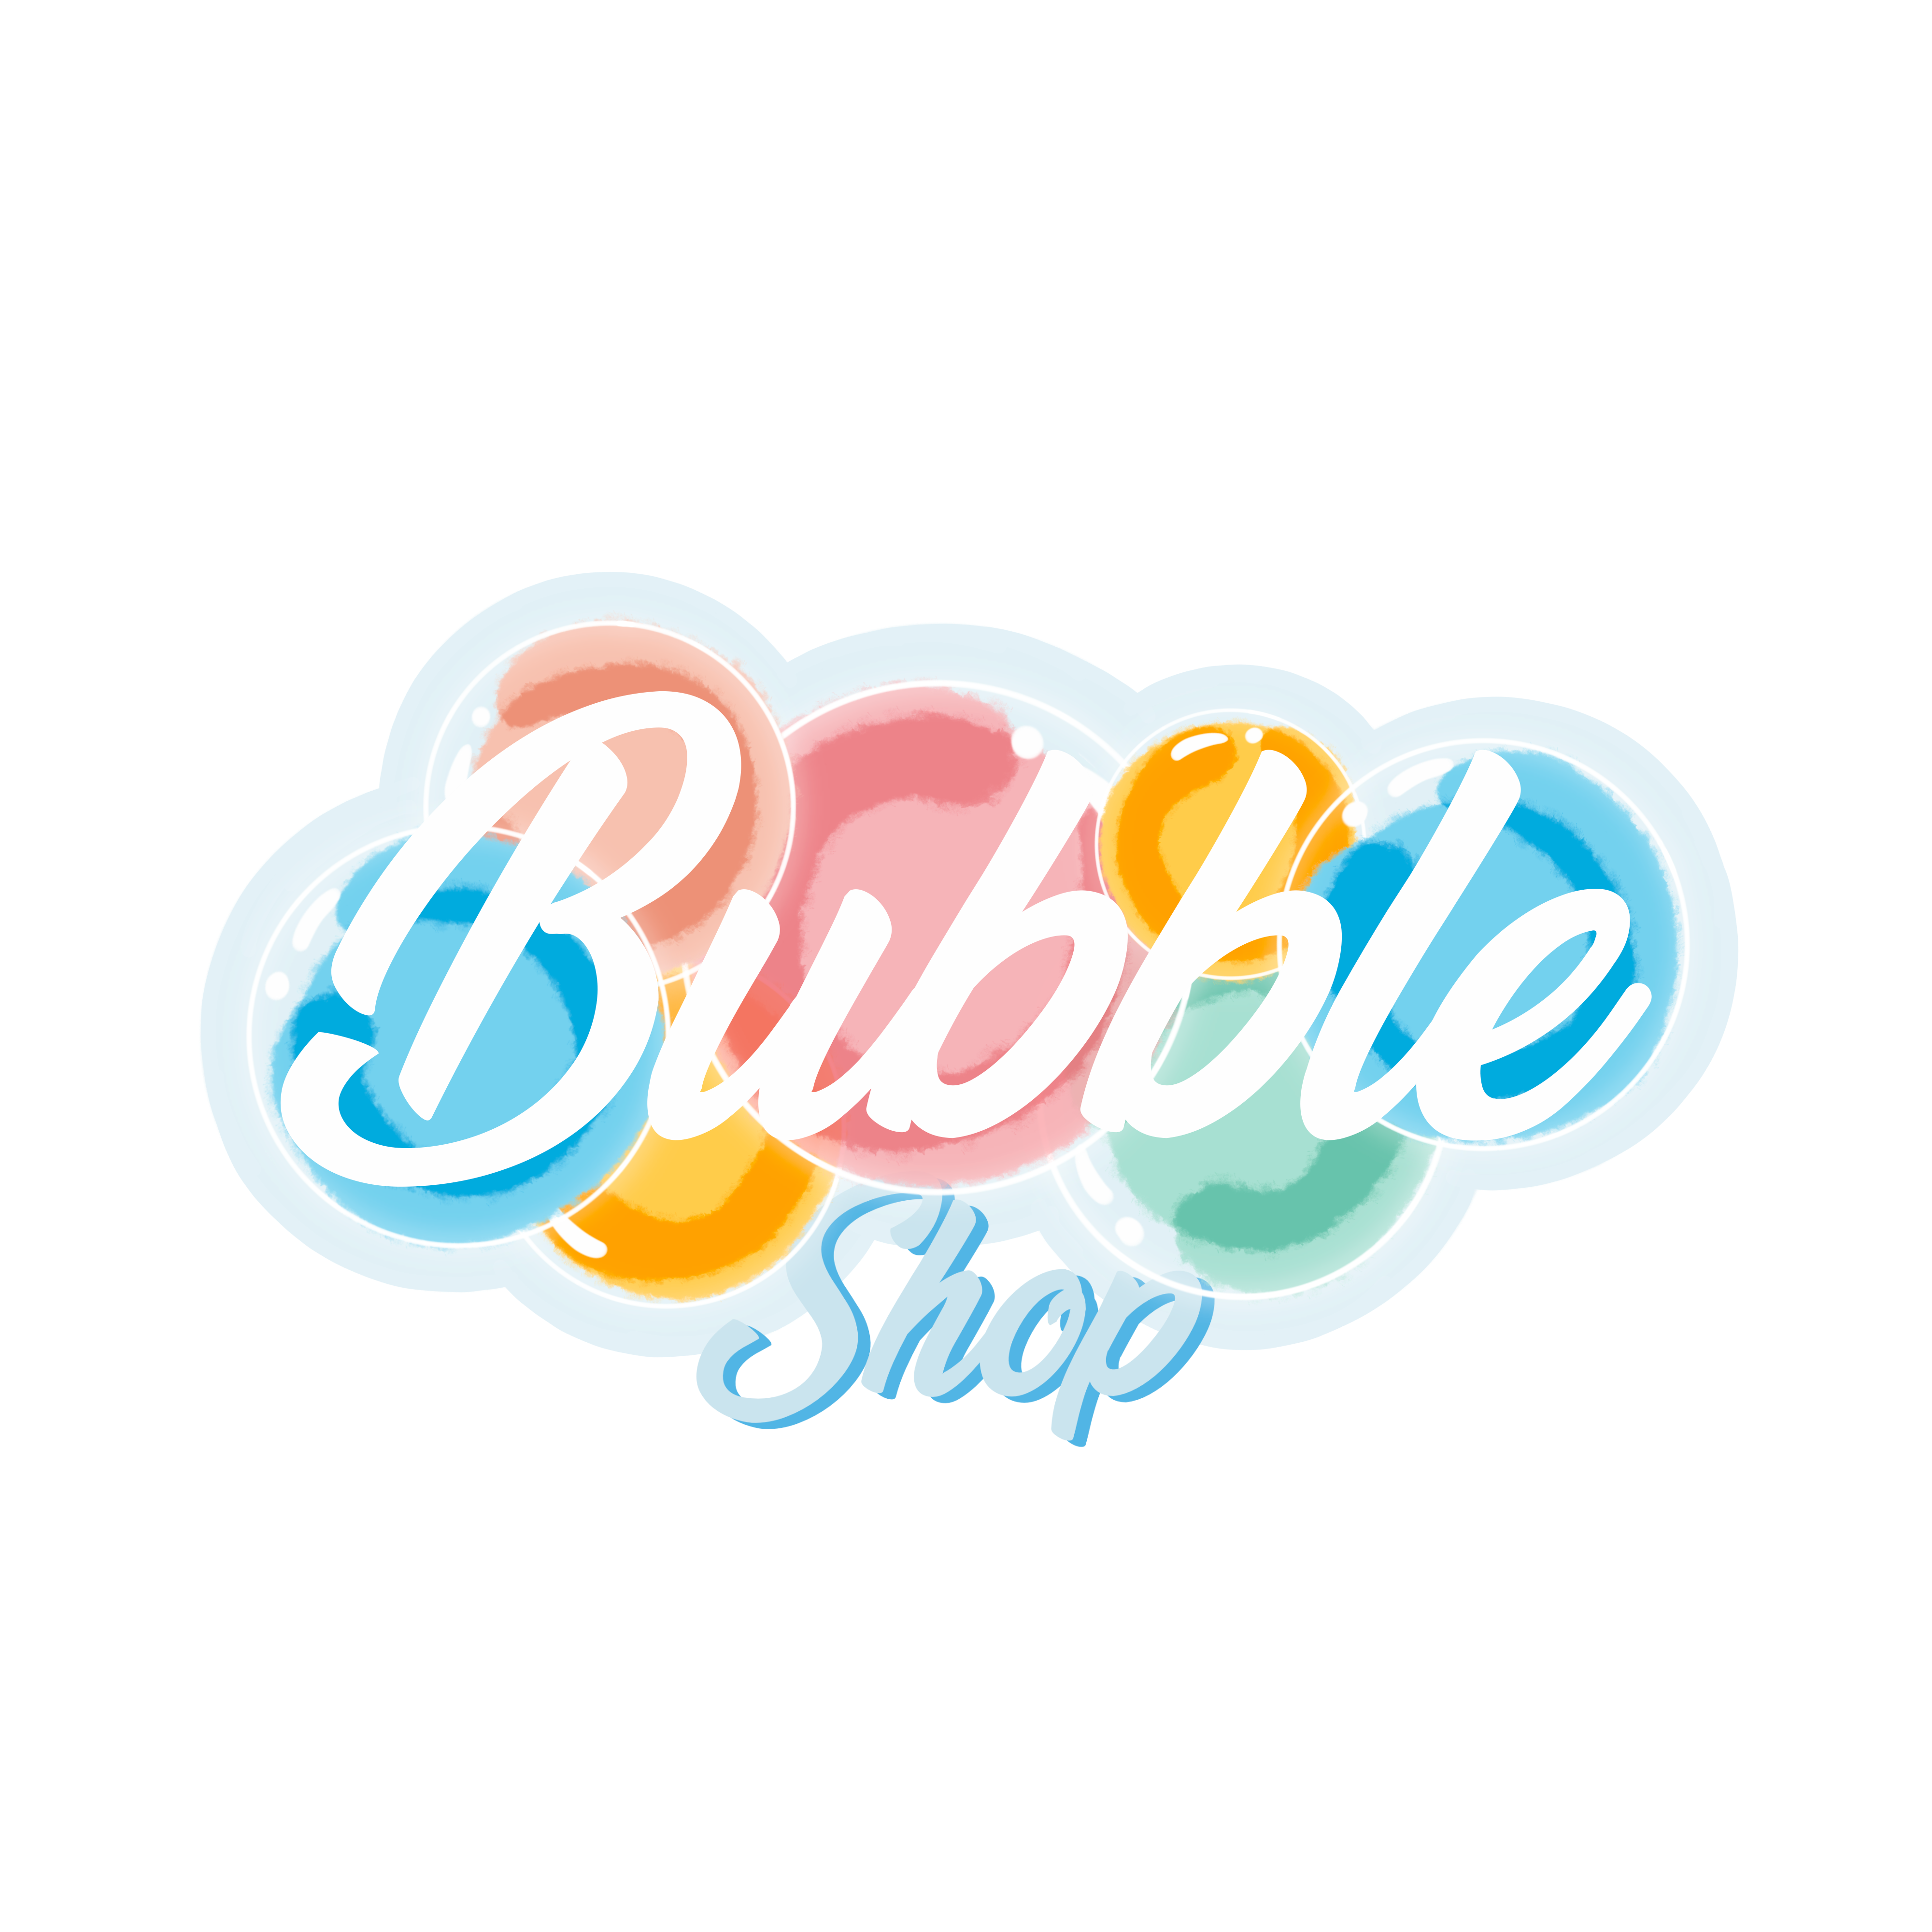 www.bubbleshop.ge